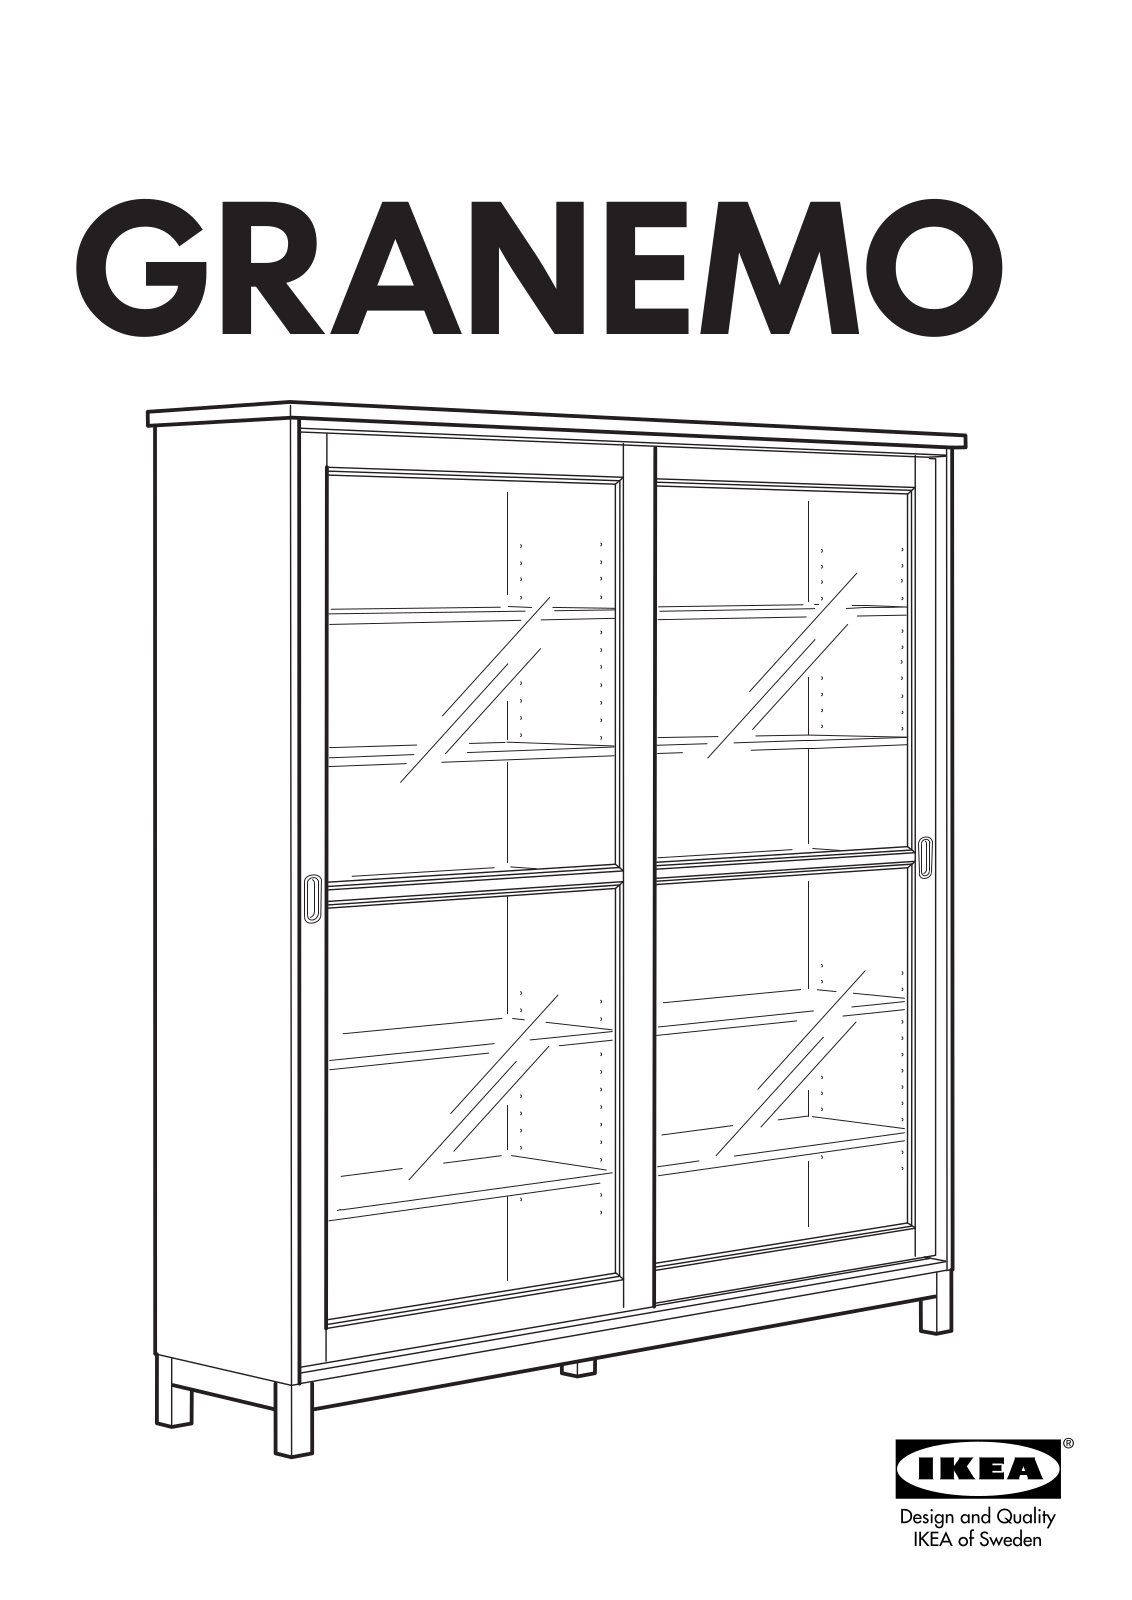 IKEA GRANEMO GLASS-DOOR CABINET 64X68